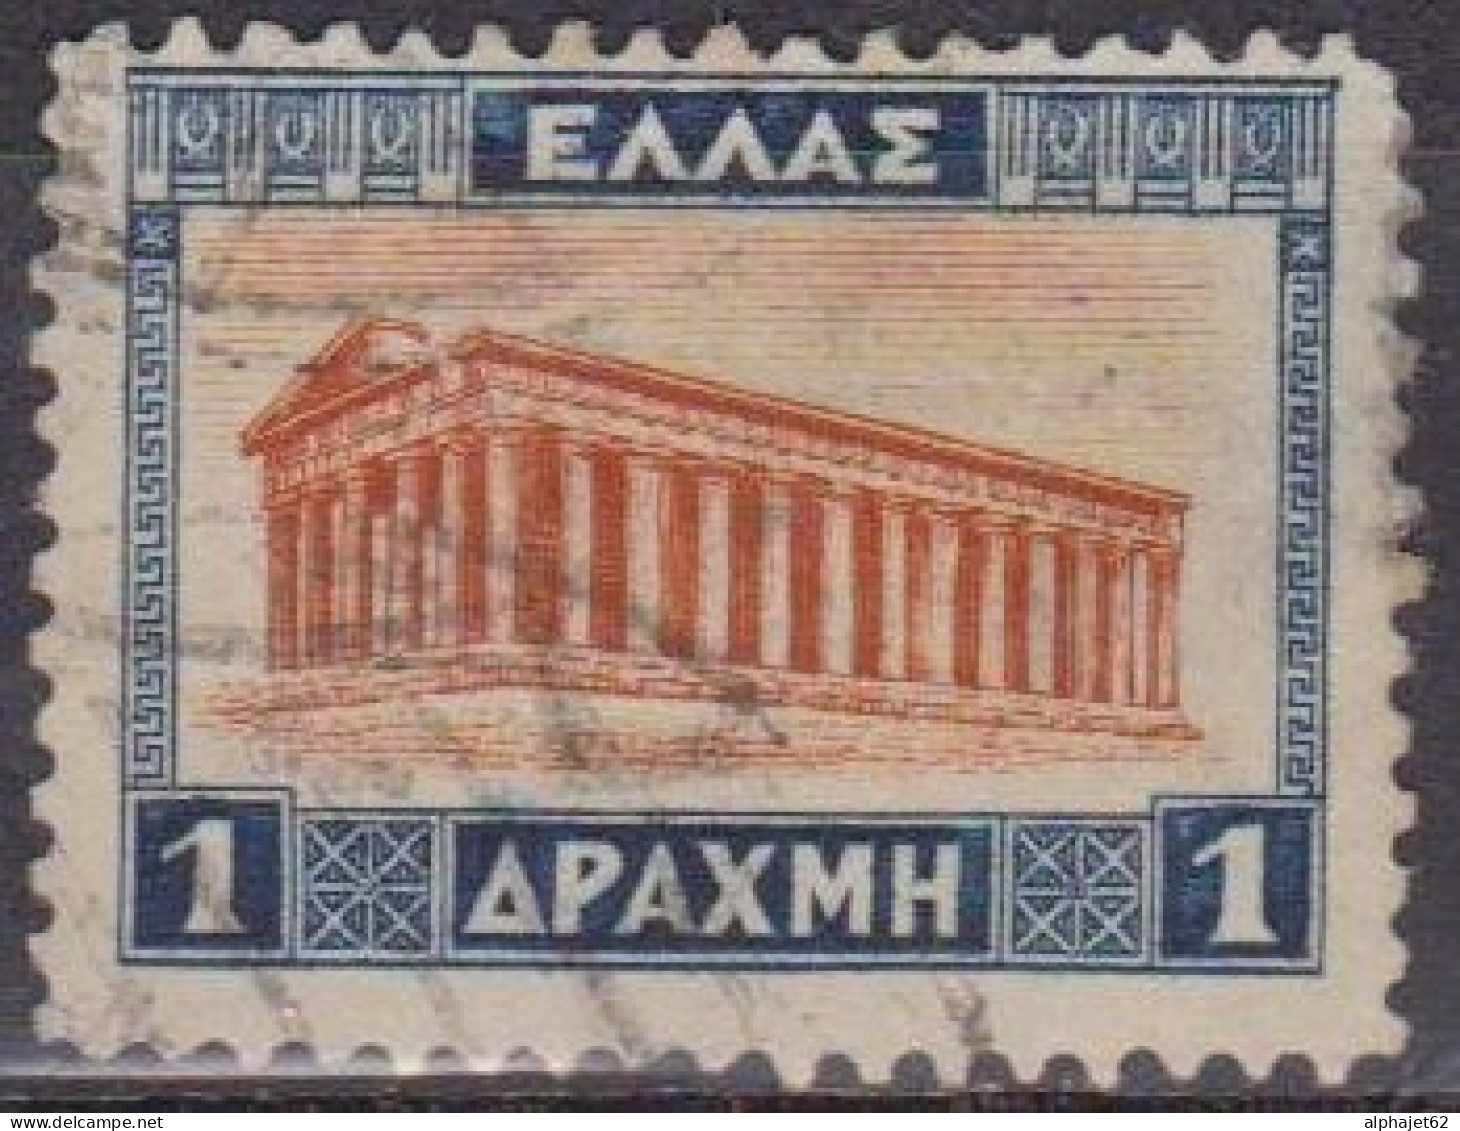 Temple De Thésée à Athènes - GRECE - Archéologie - N°  355 - 1927 - Usados